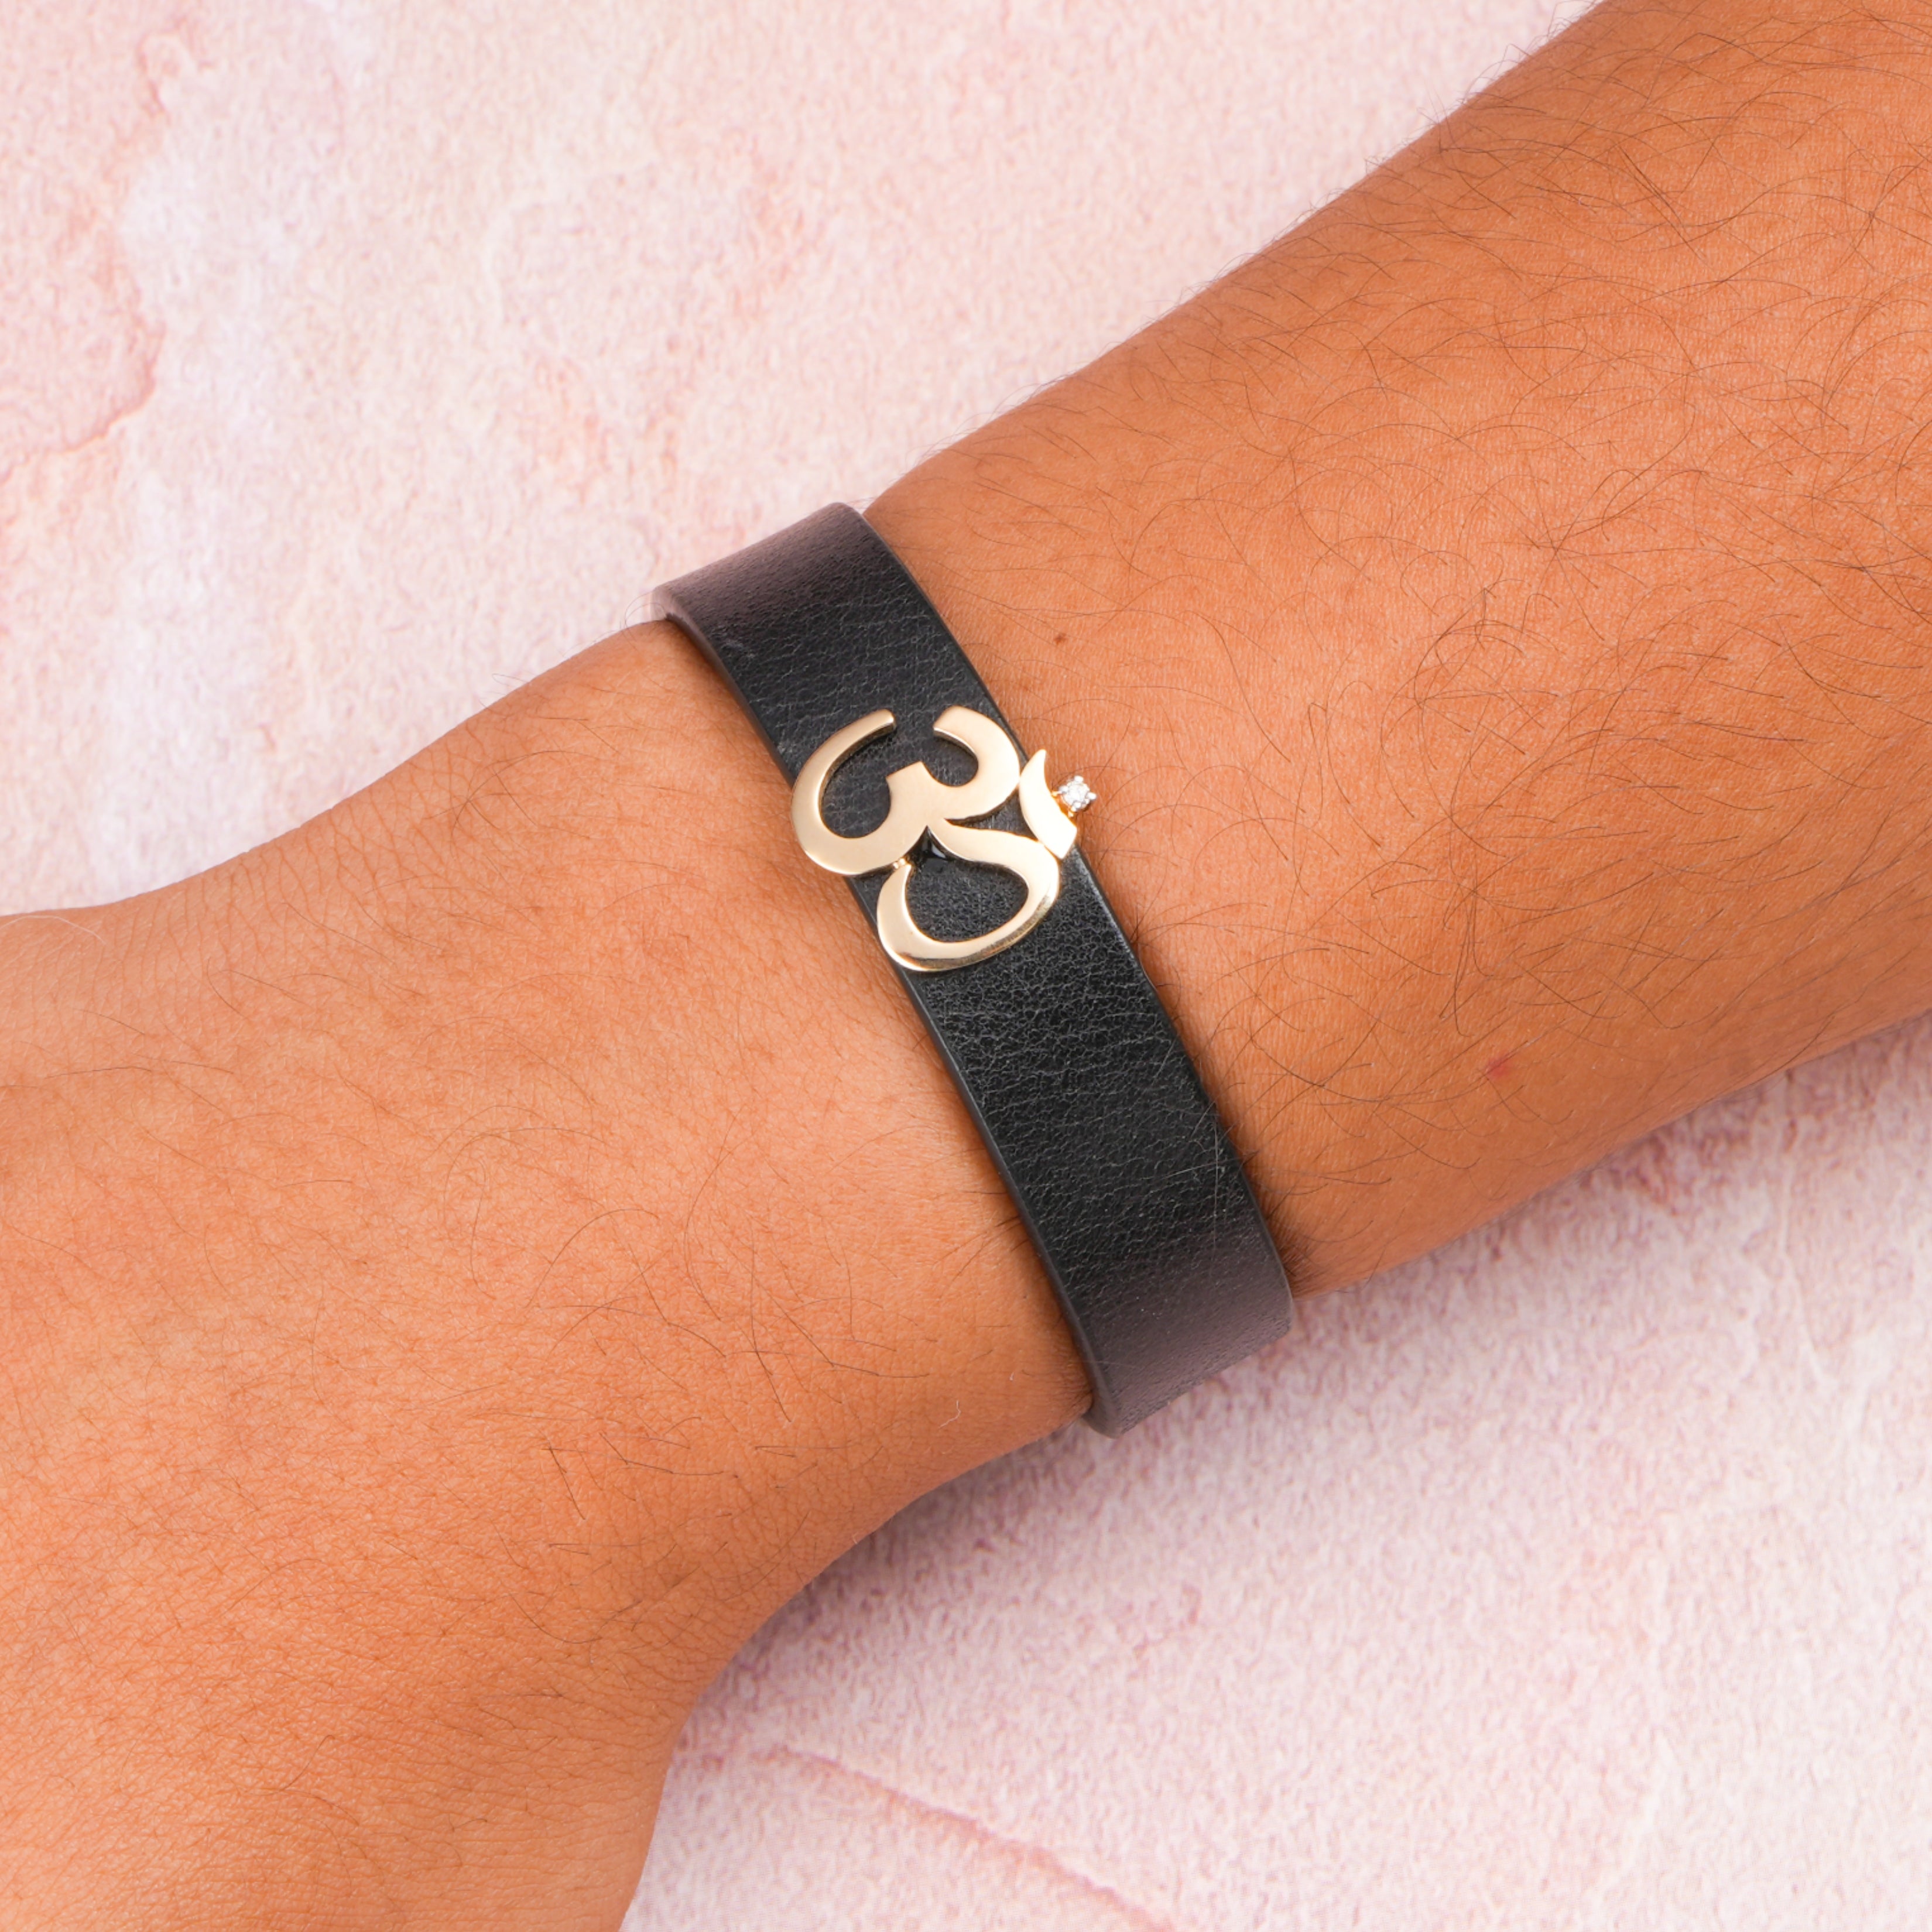 Bracelet With Om Symbol, Om Sign, Yoga Accessories, Leather Accessories,  Men Bracelet, Women Cuff, Great Gift. -  Canada